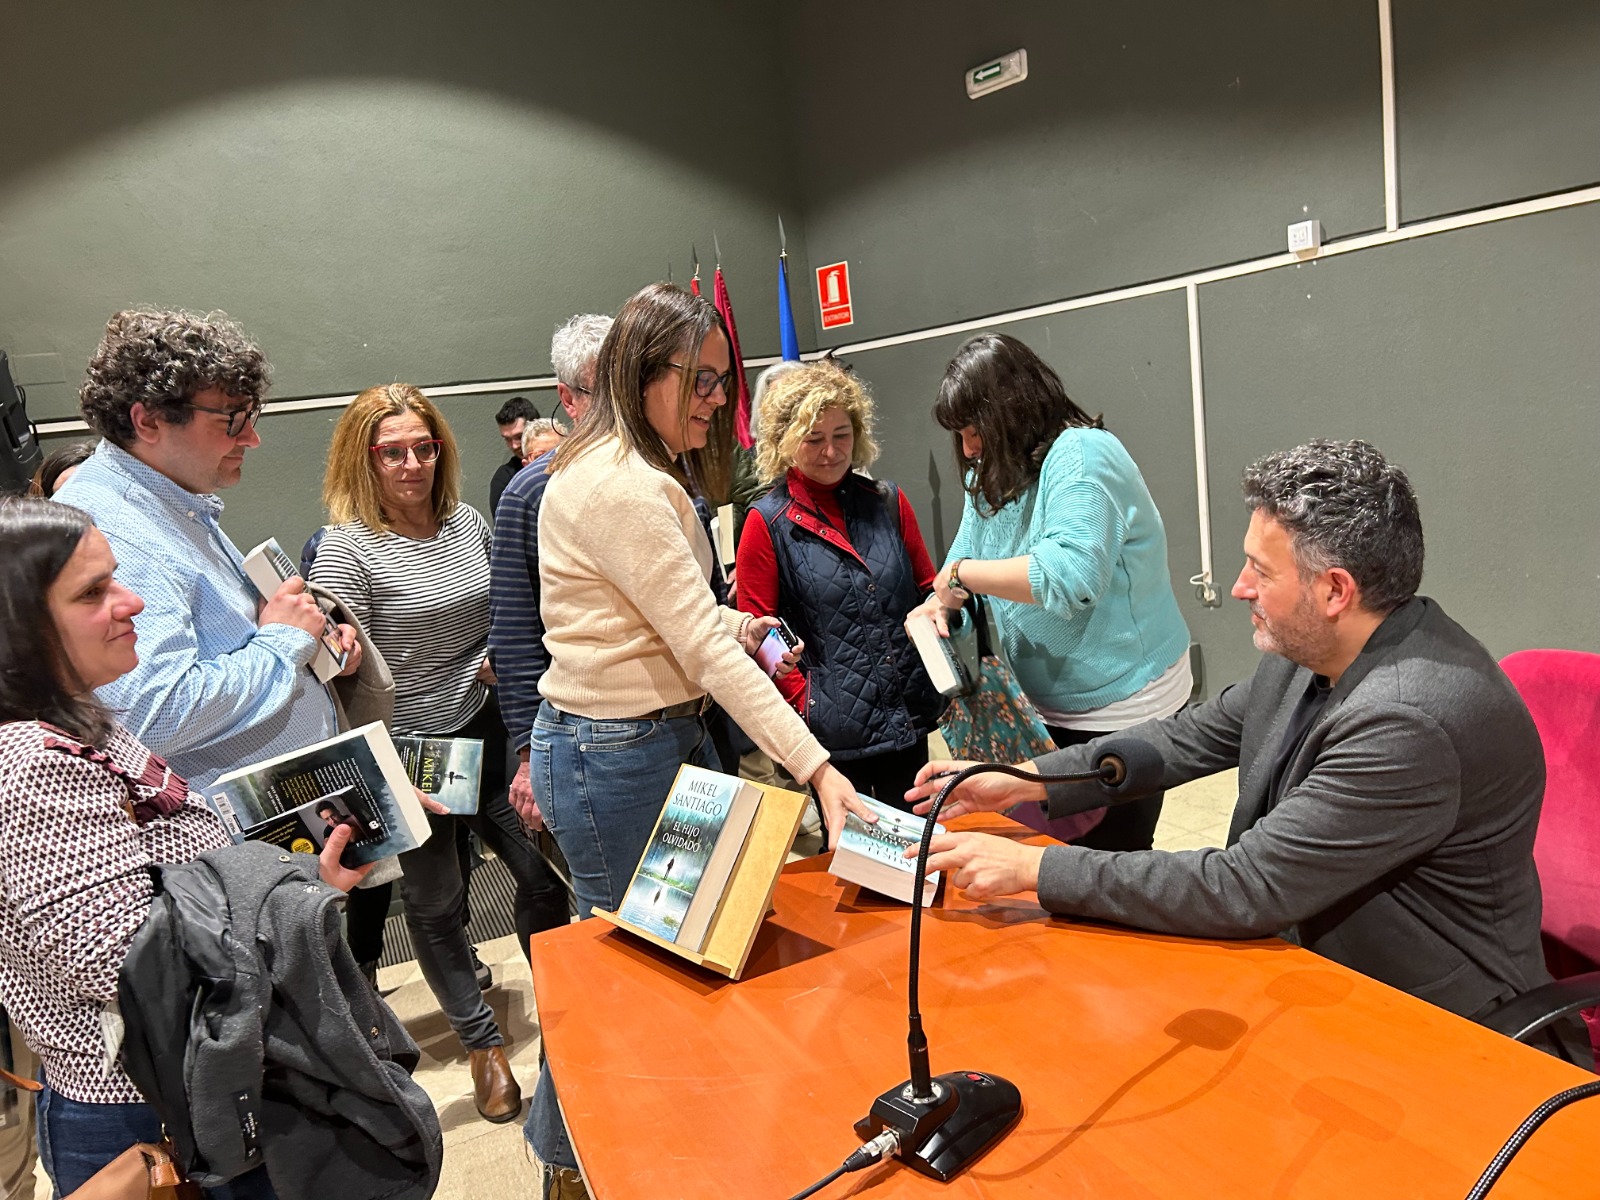 Presentación del libro 'El Hijo olvidado' de Mikel Santiago en el Centro  Cultural Aguirre